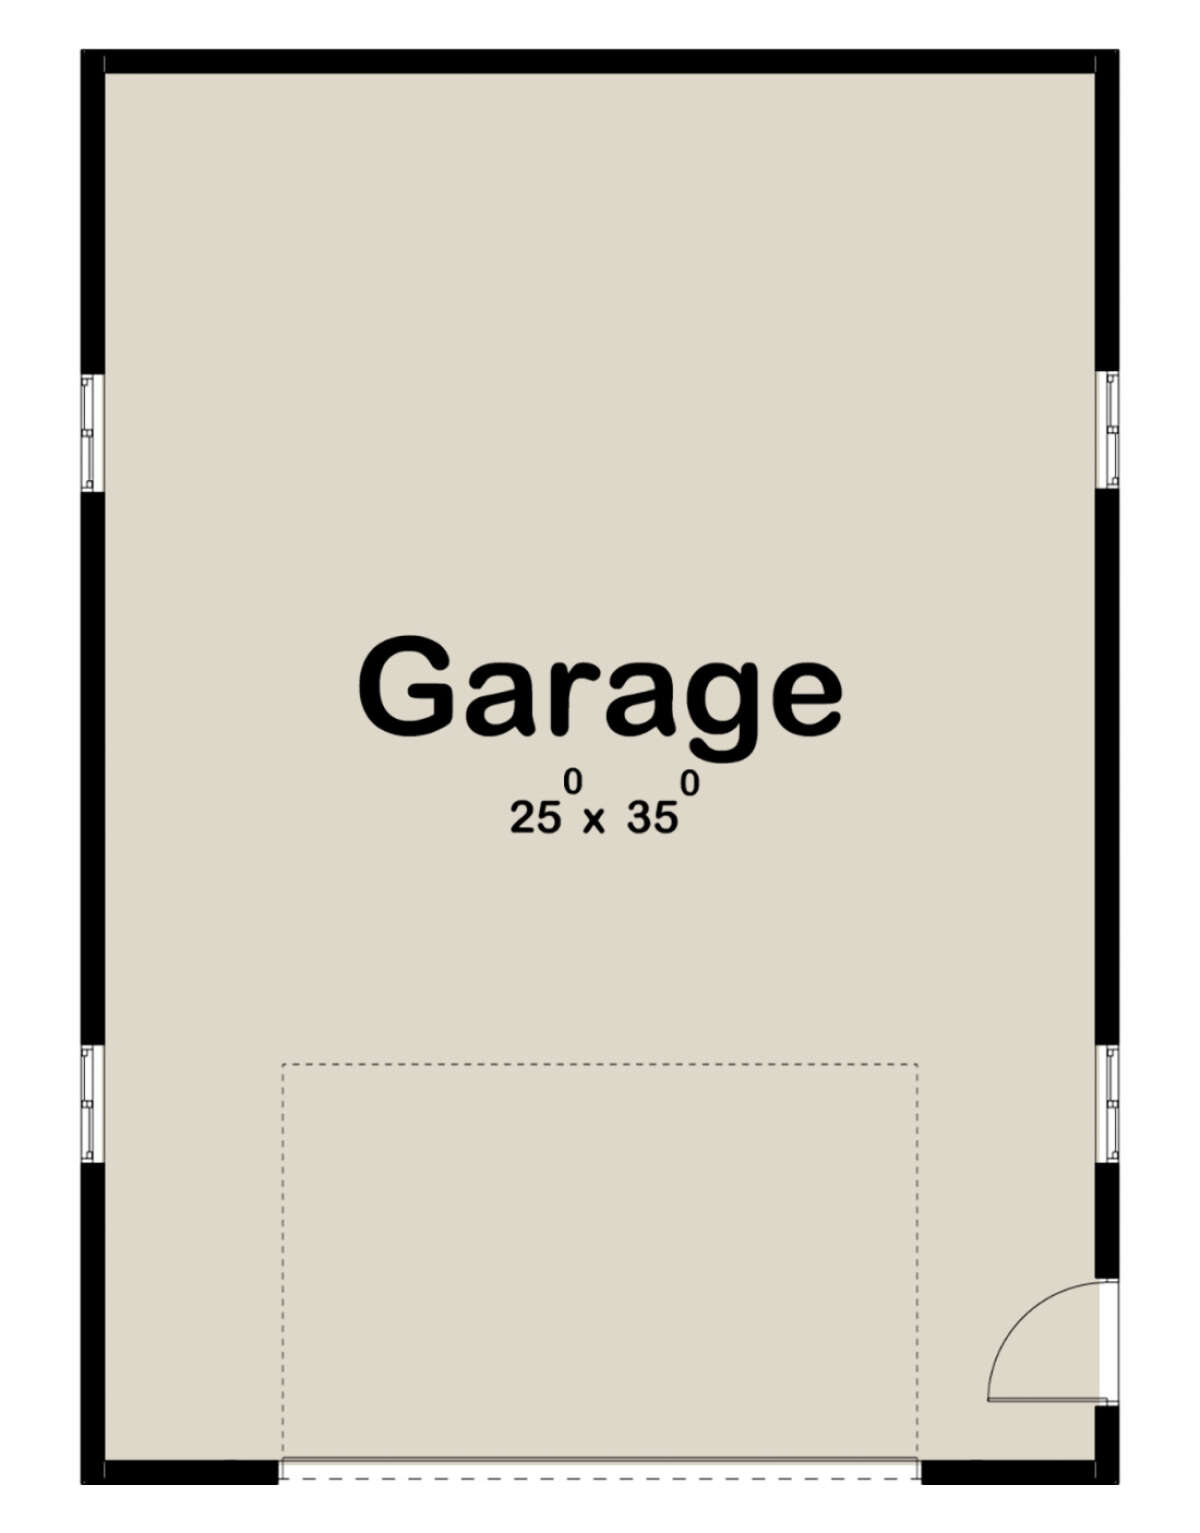 Garage Floor for House Plan #963-00542